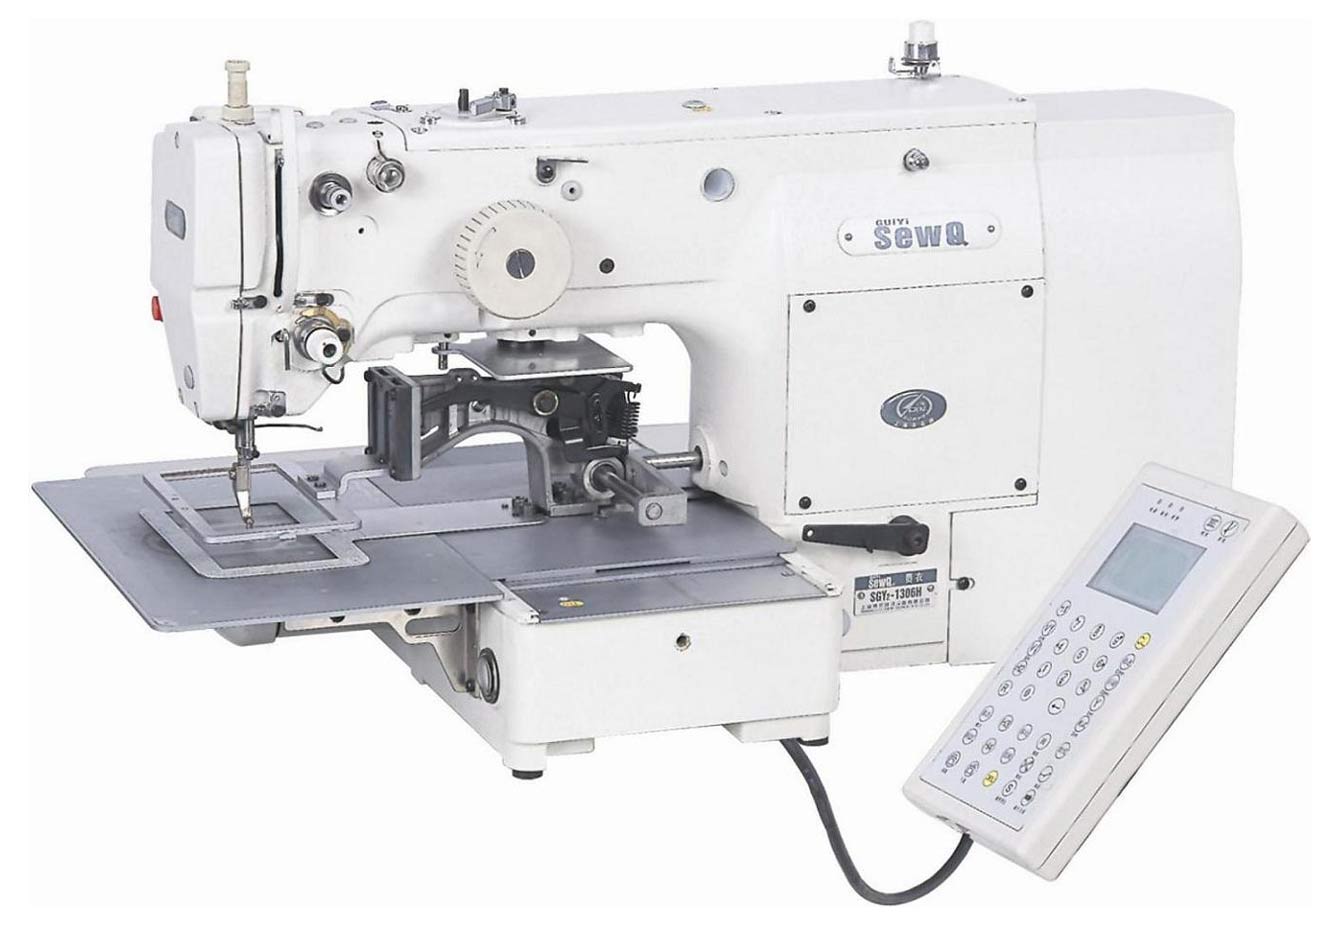  Computerized Servomotor Direct Drive Pattern Program Sewing Machine (Компьютеризированная Servomotor Прямой привод План программы Швейные машины)